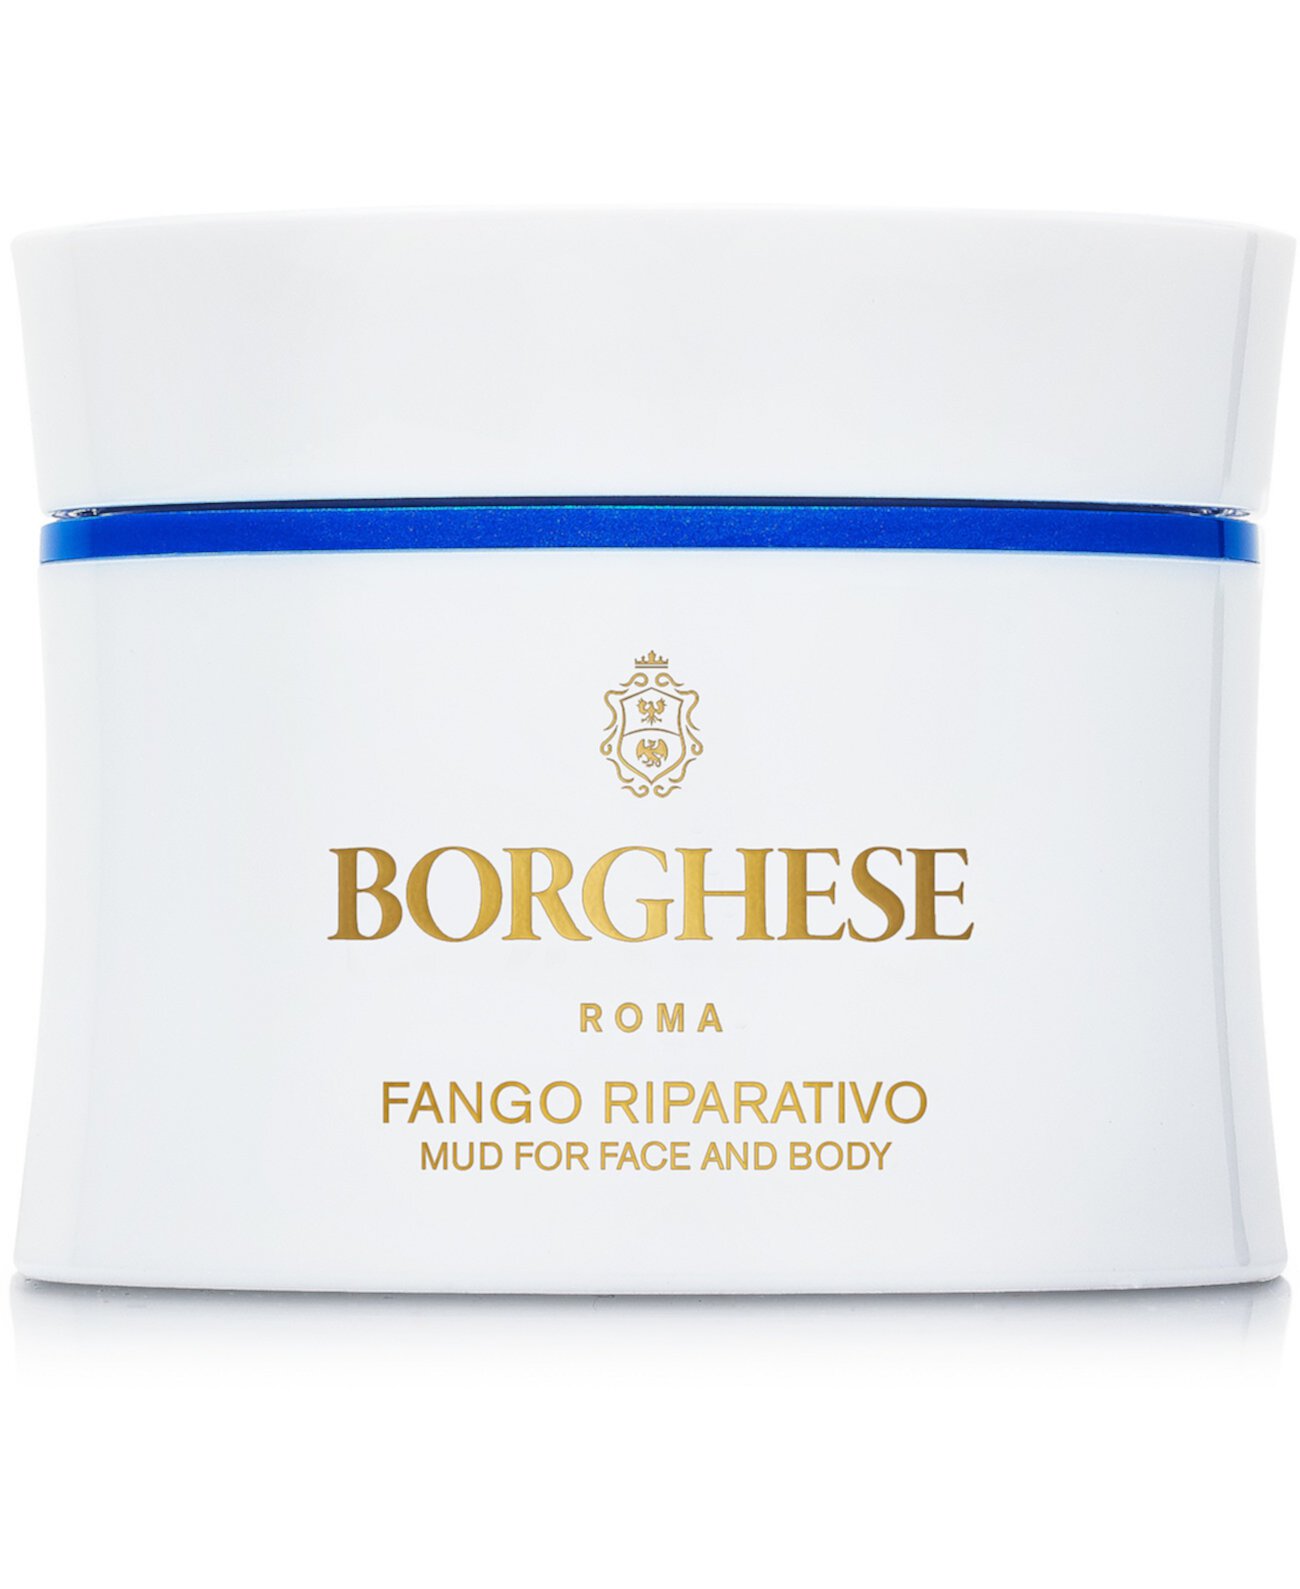 Грязевая маска Fango Riparativo, 2,7 унции. Borghese